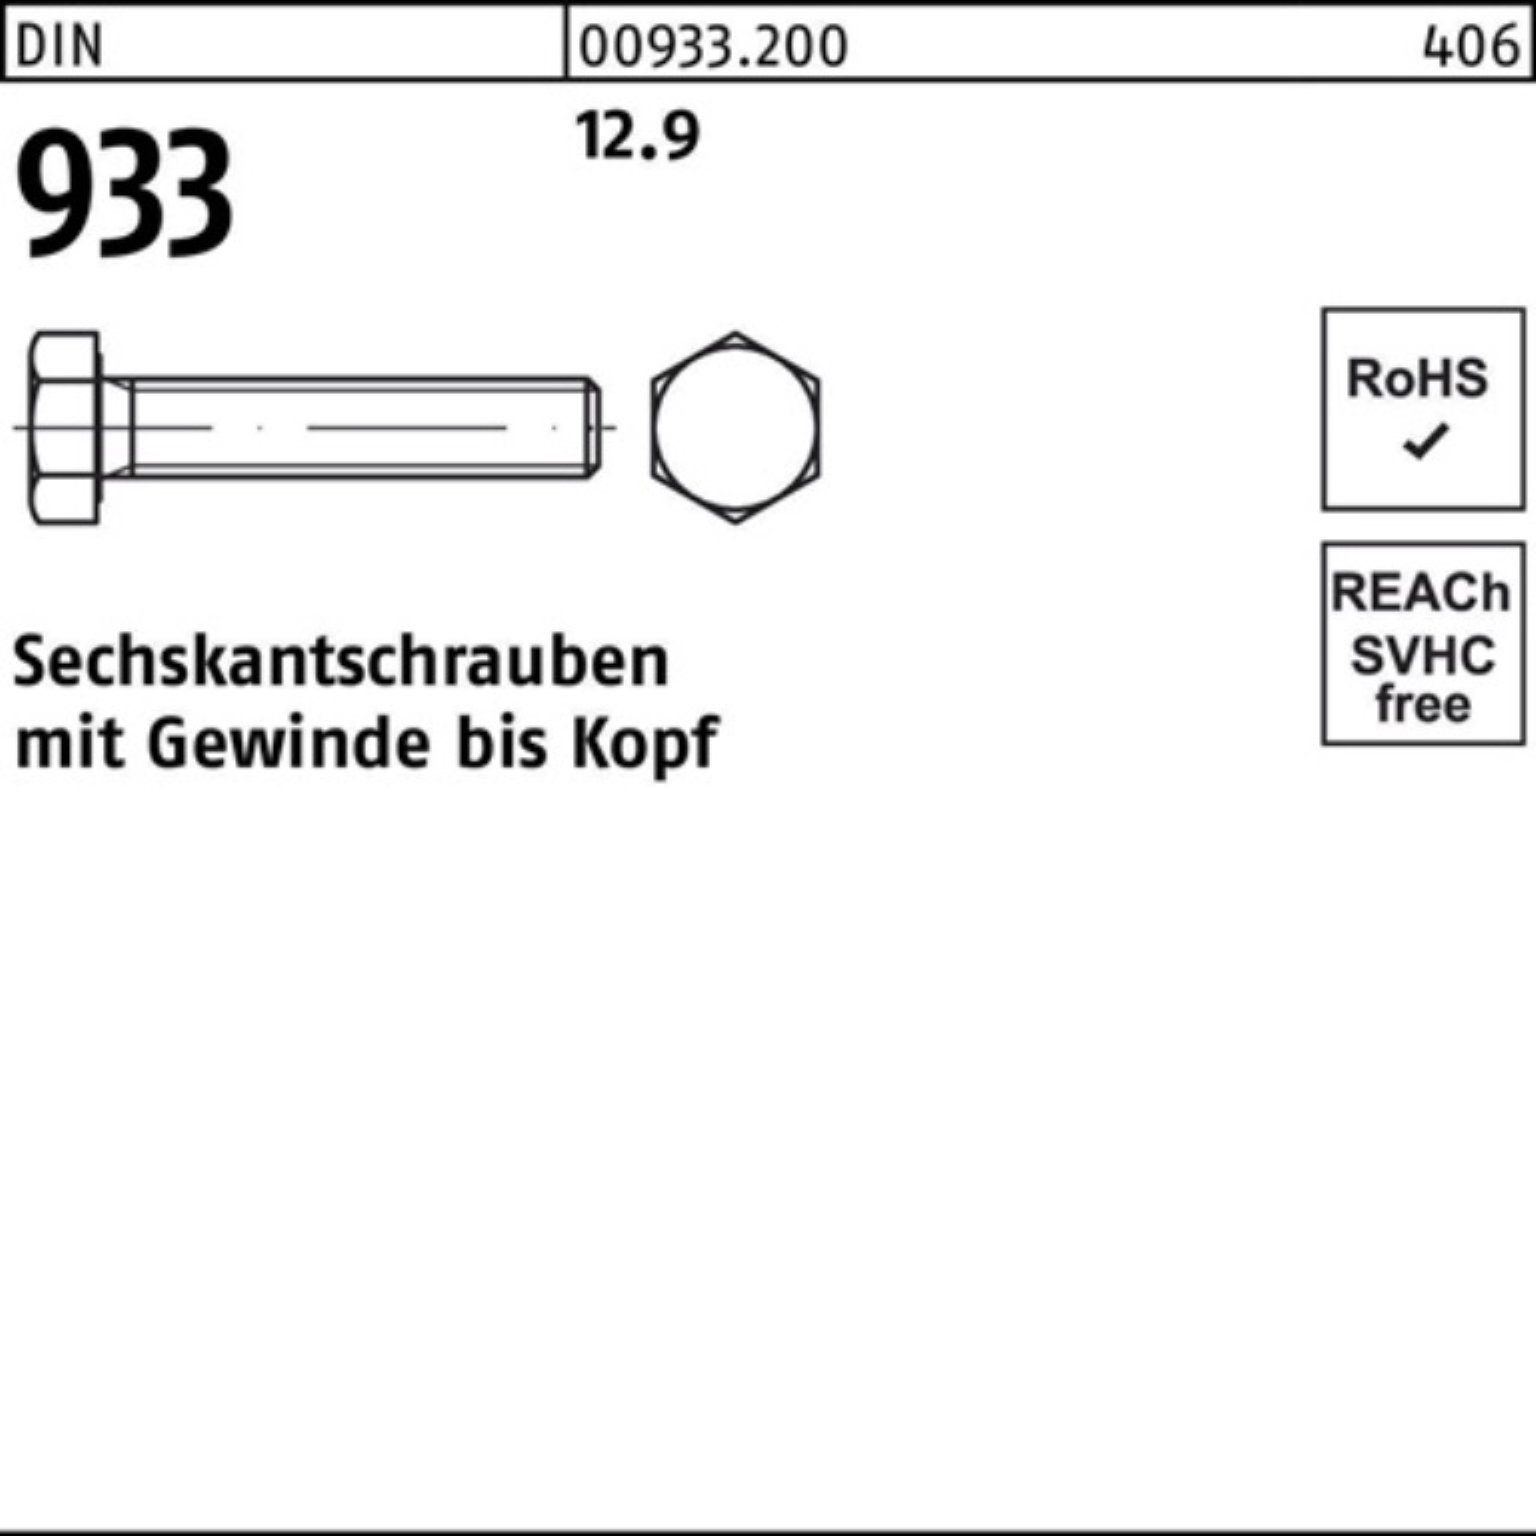 Reyher Sechskantschraube 200 933 M8x 12.9 933 Sechskantschraube VG Pack DIN 60 DIN Stück 200er